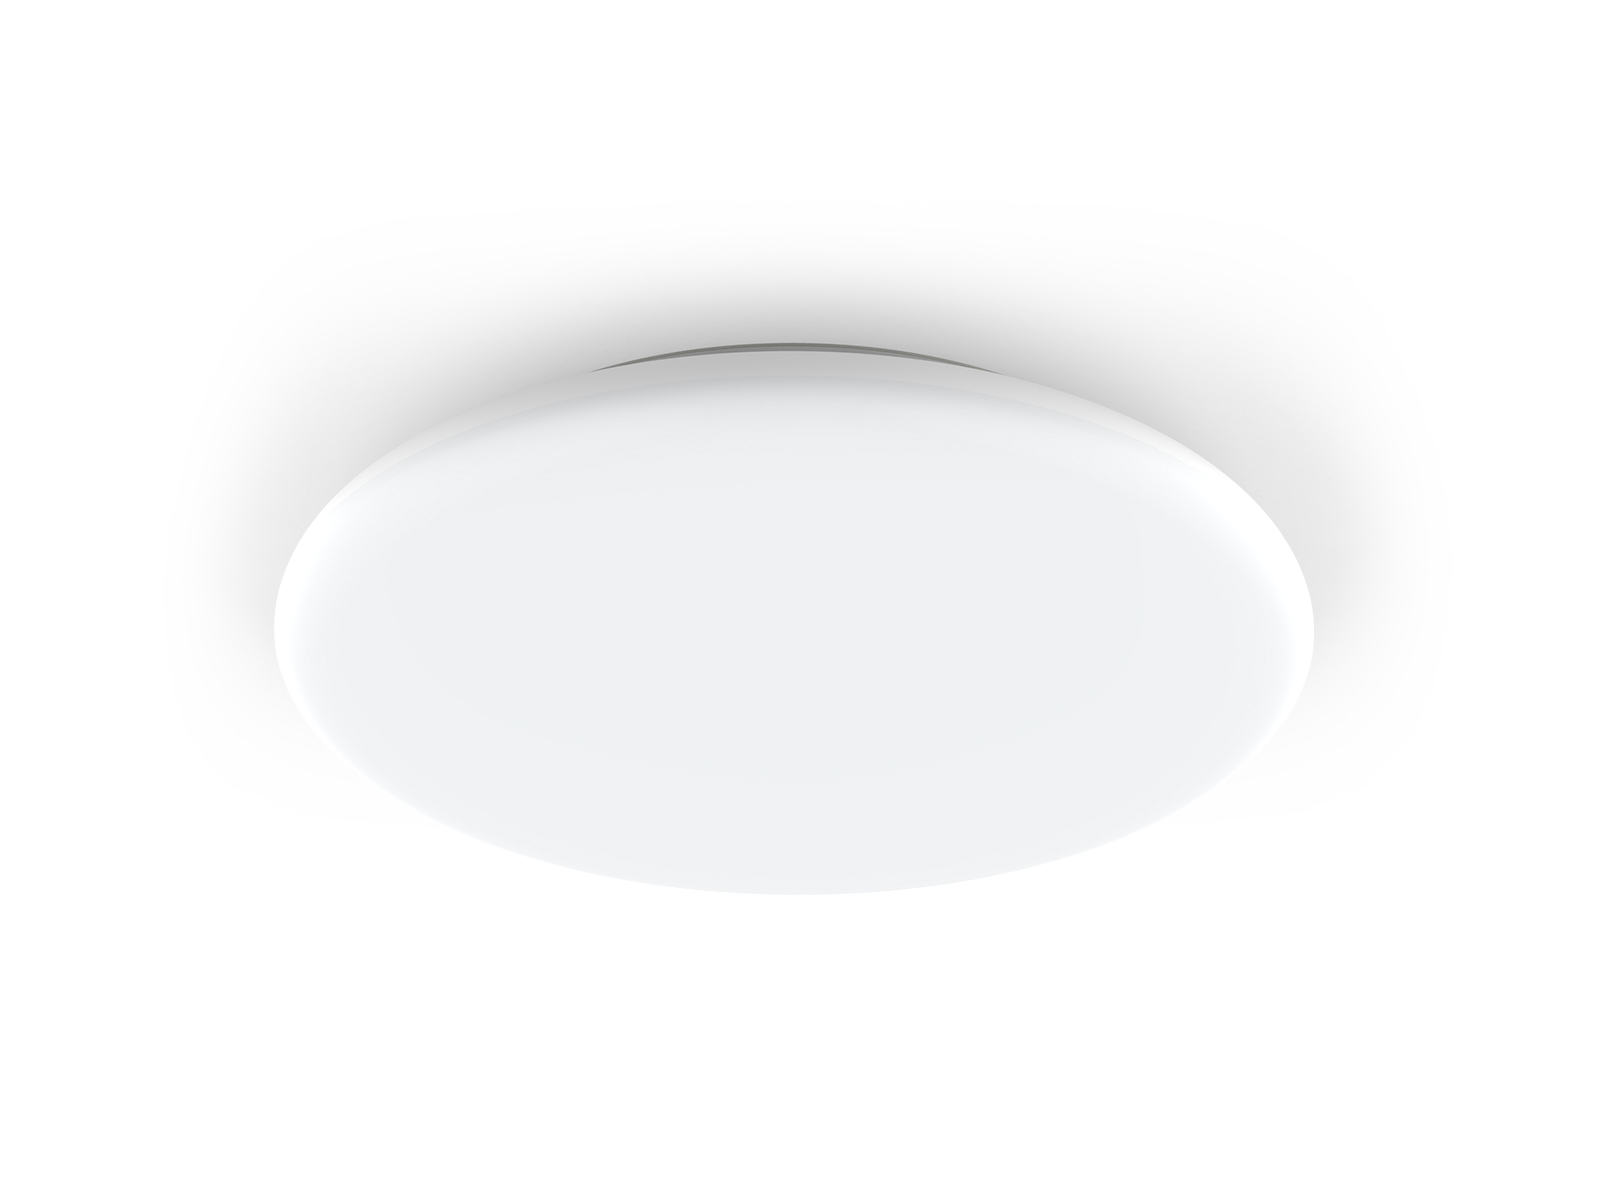 AL47 Ultr-slim frameless LED Ceiling Light Sensor